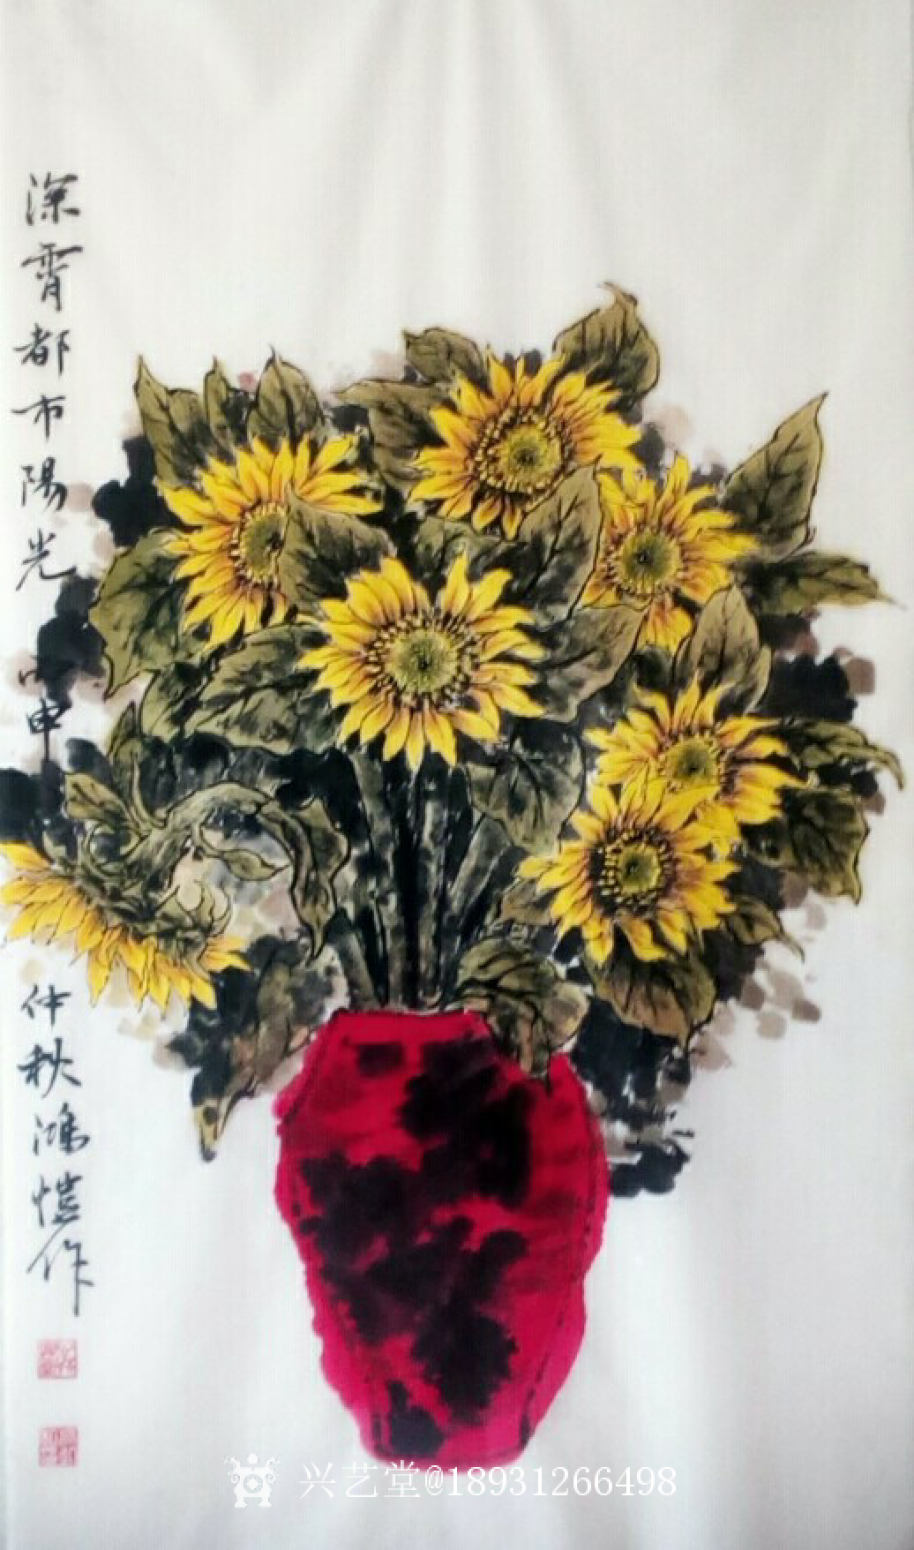 18931266498国画作品《向日葵》